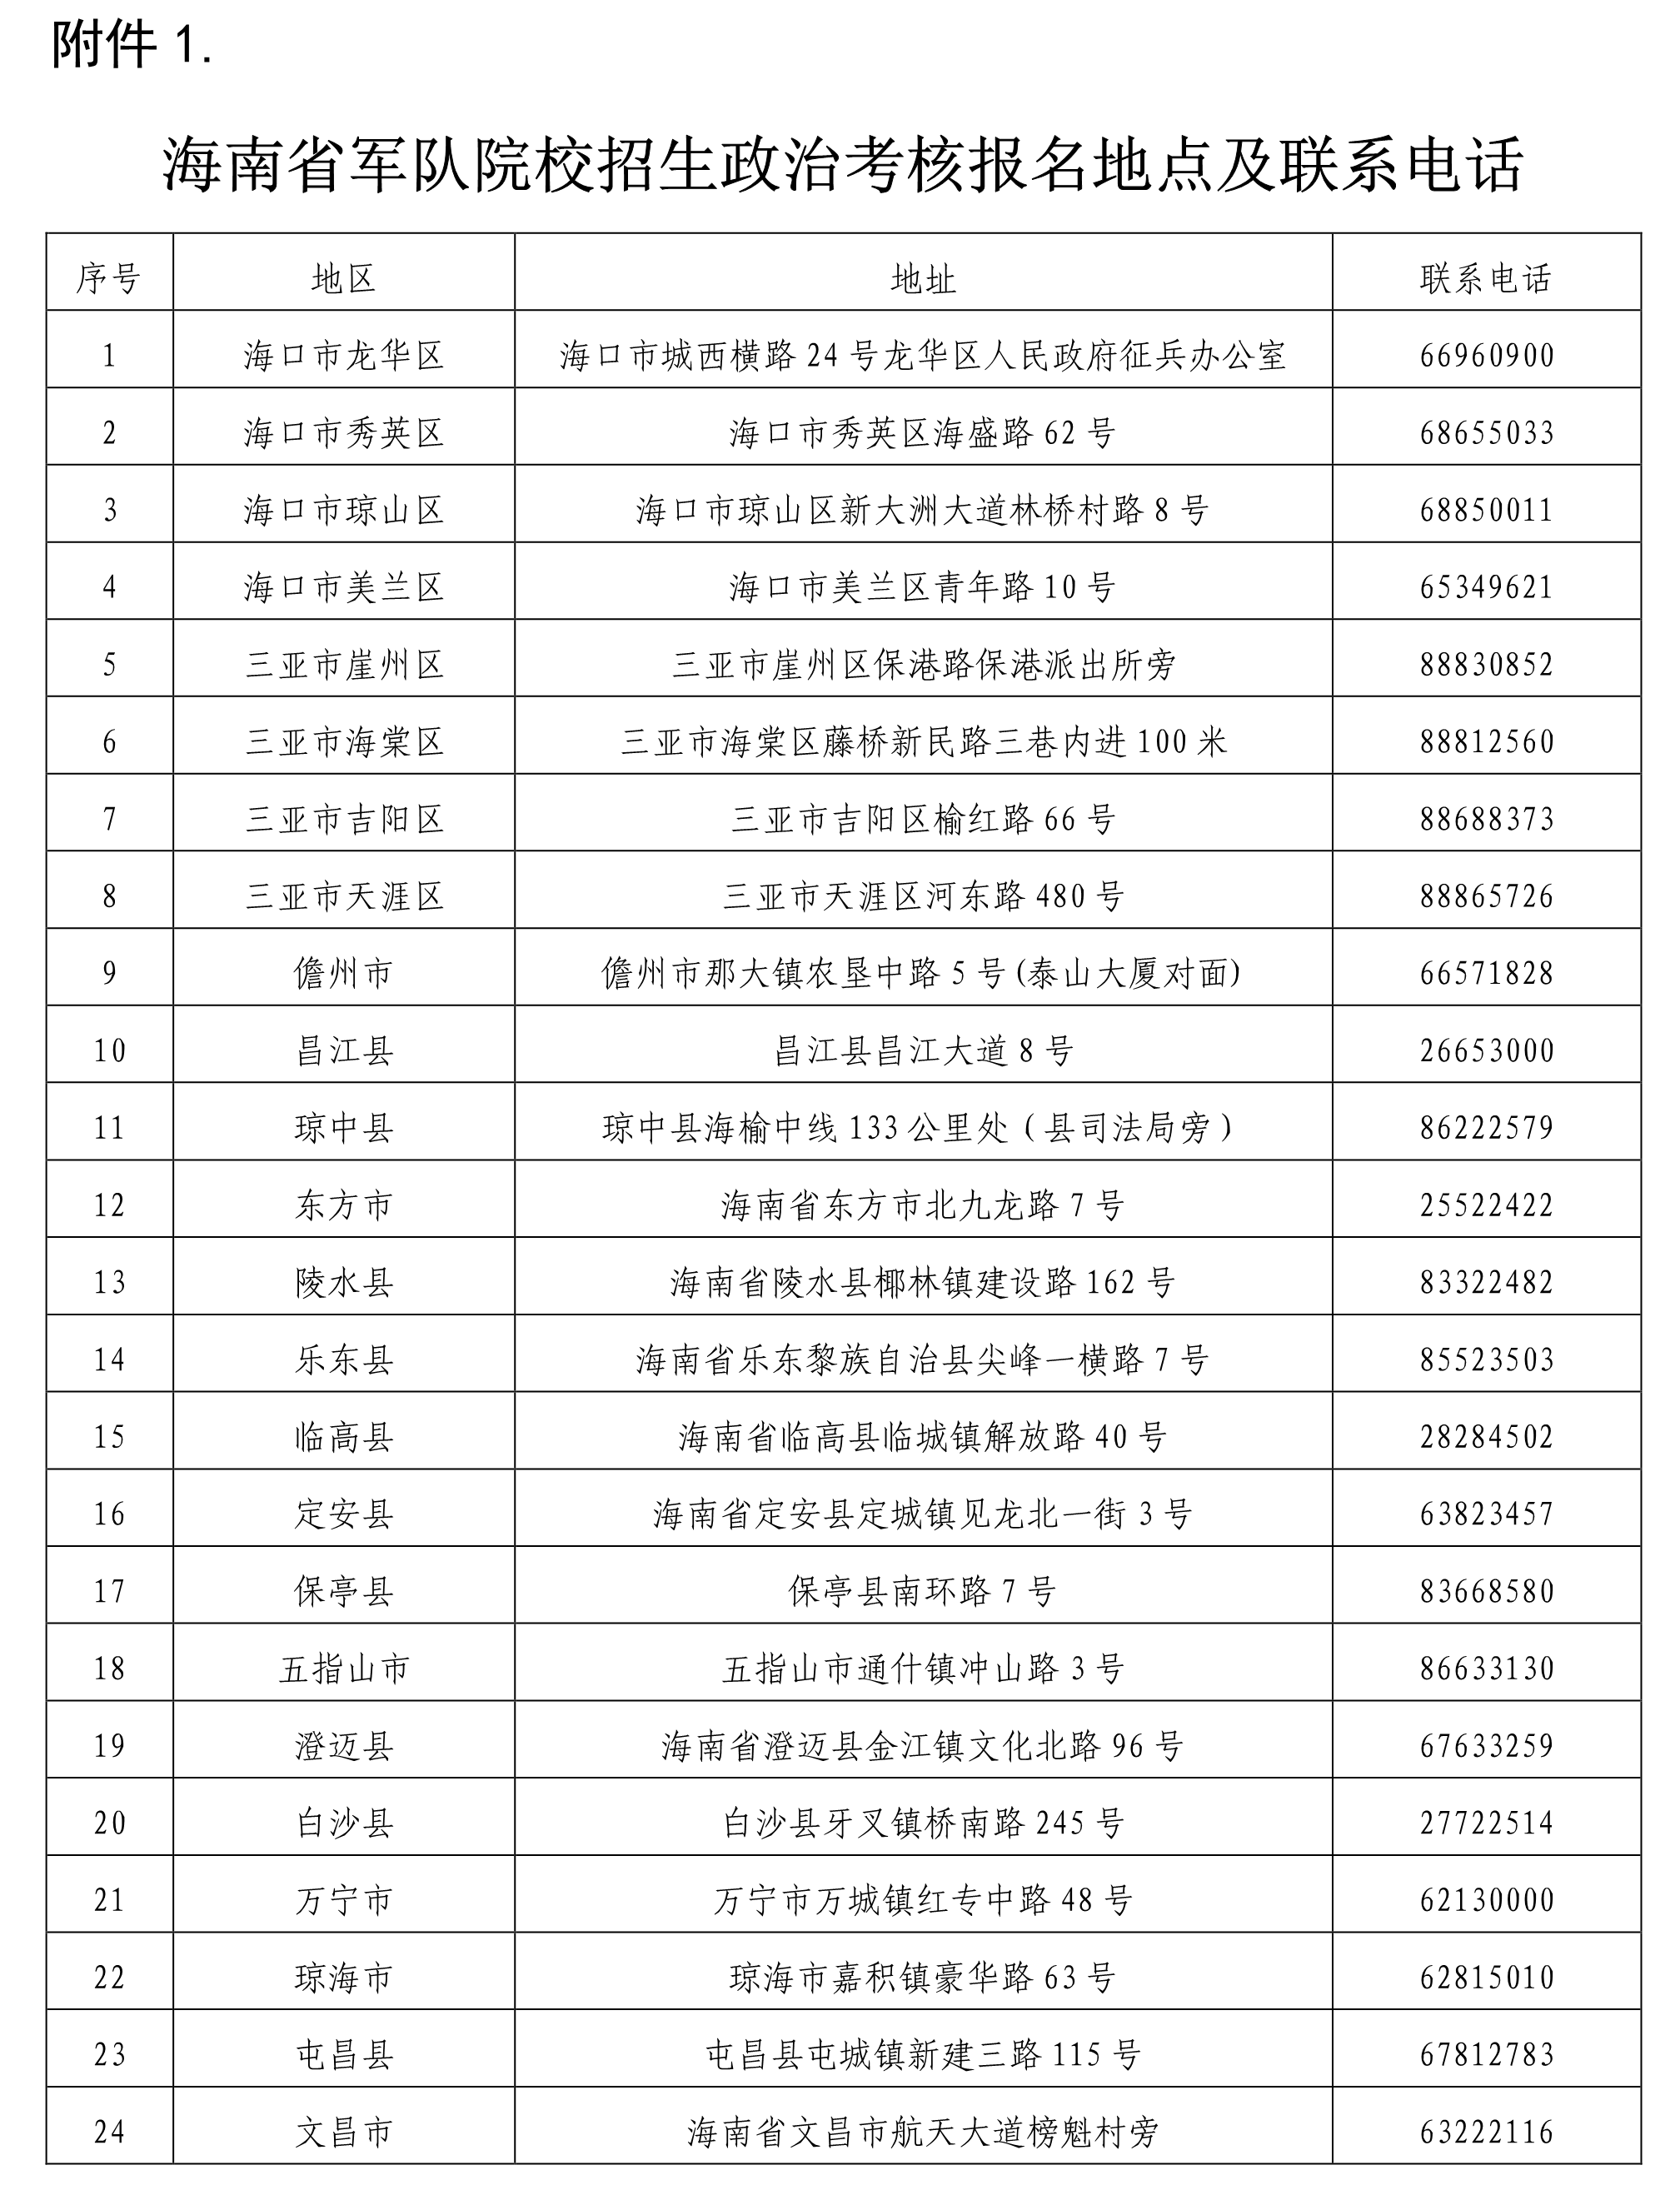 2021年海南省军队院校招生政治考核报名地点及联系电话